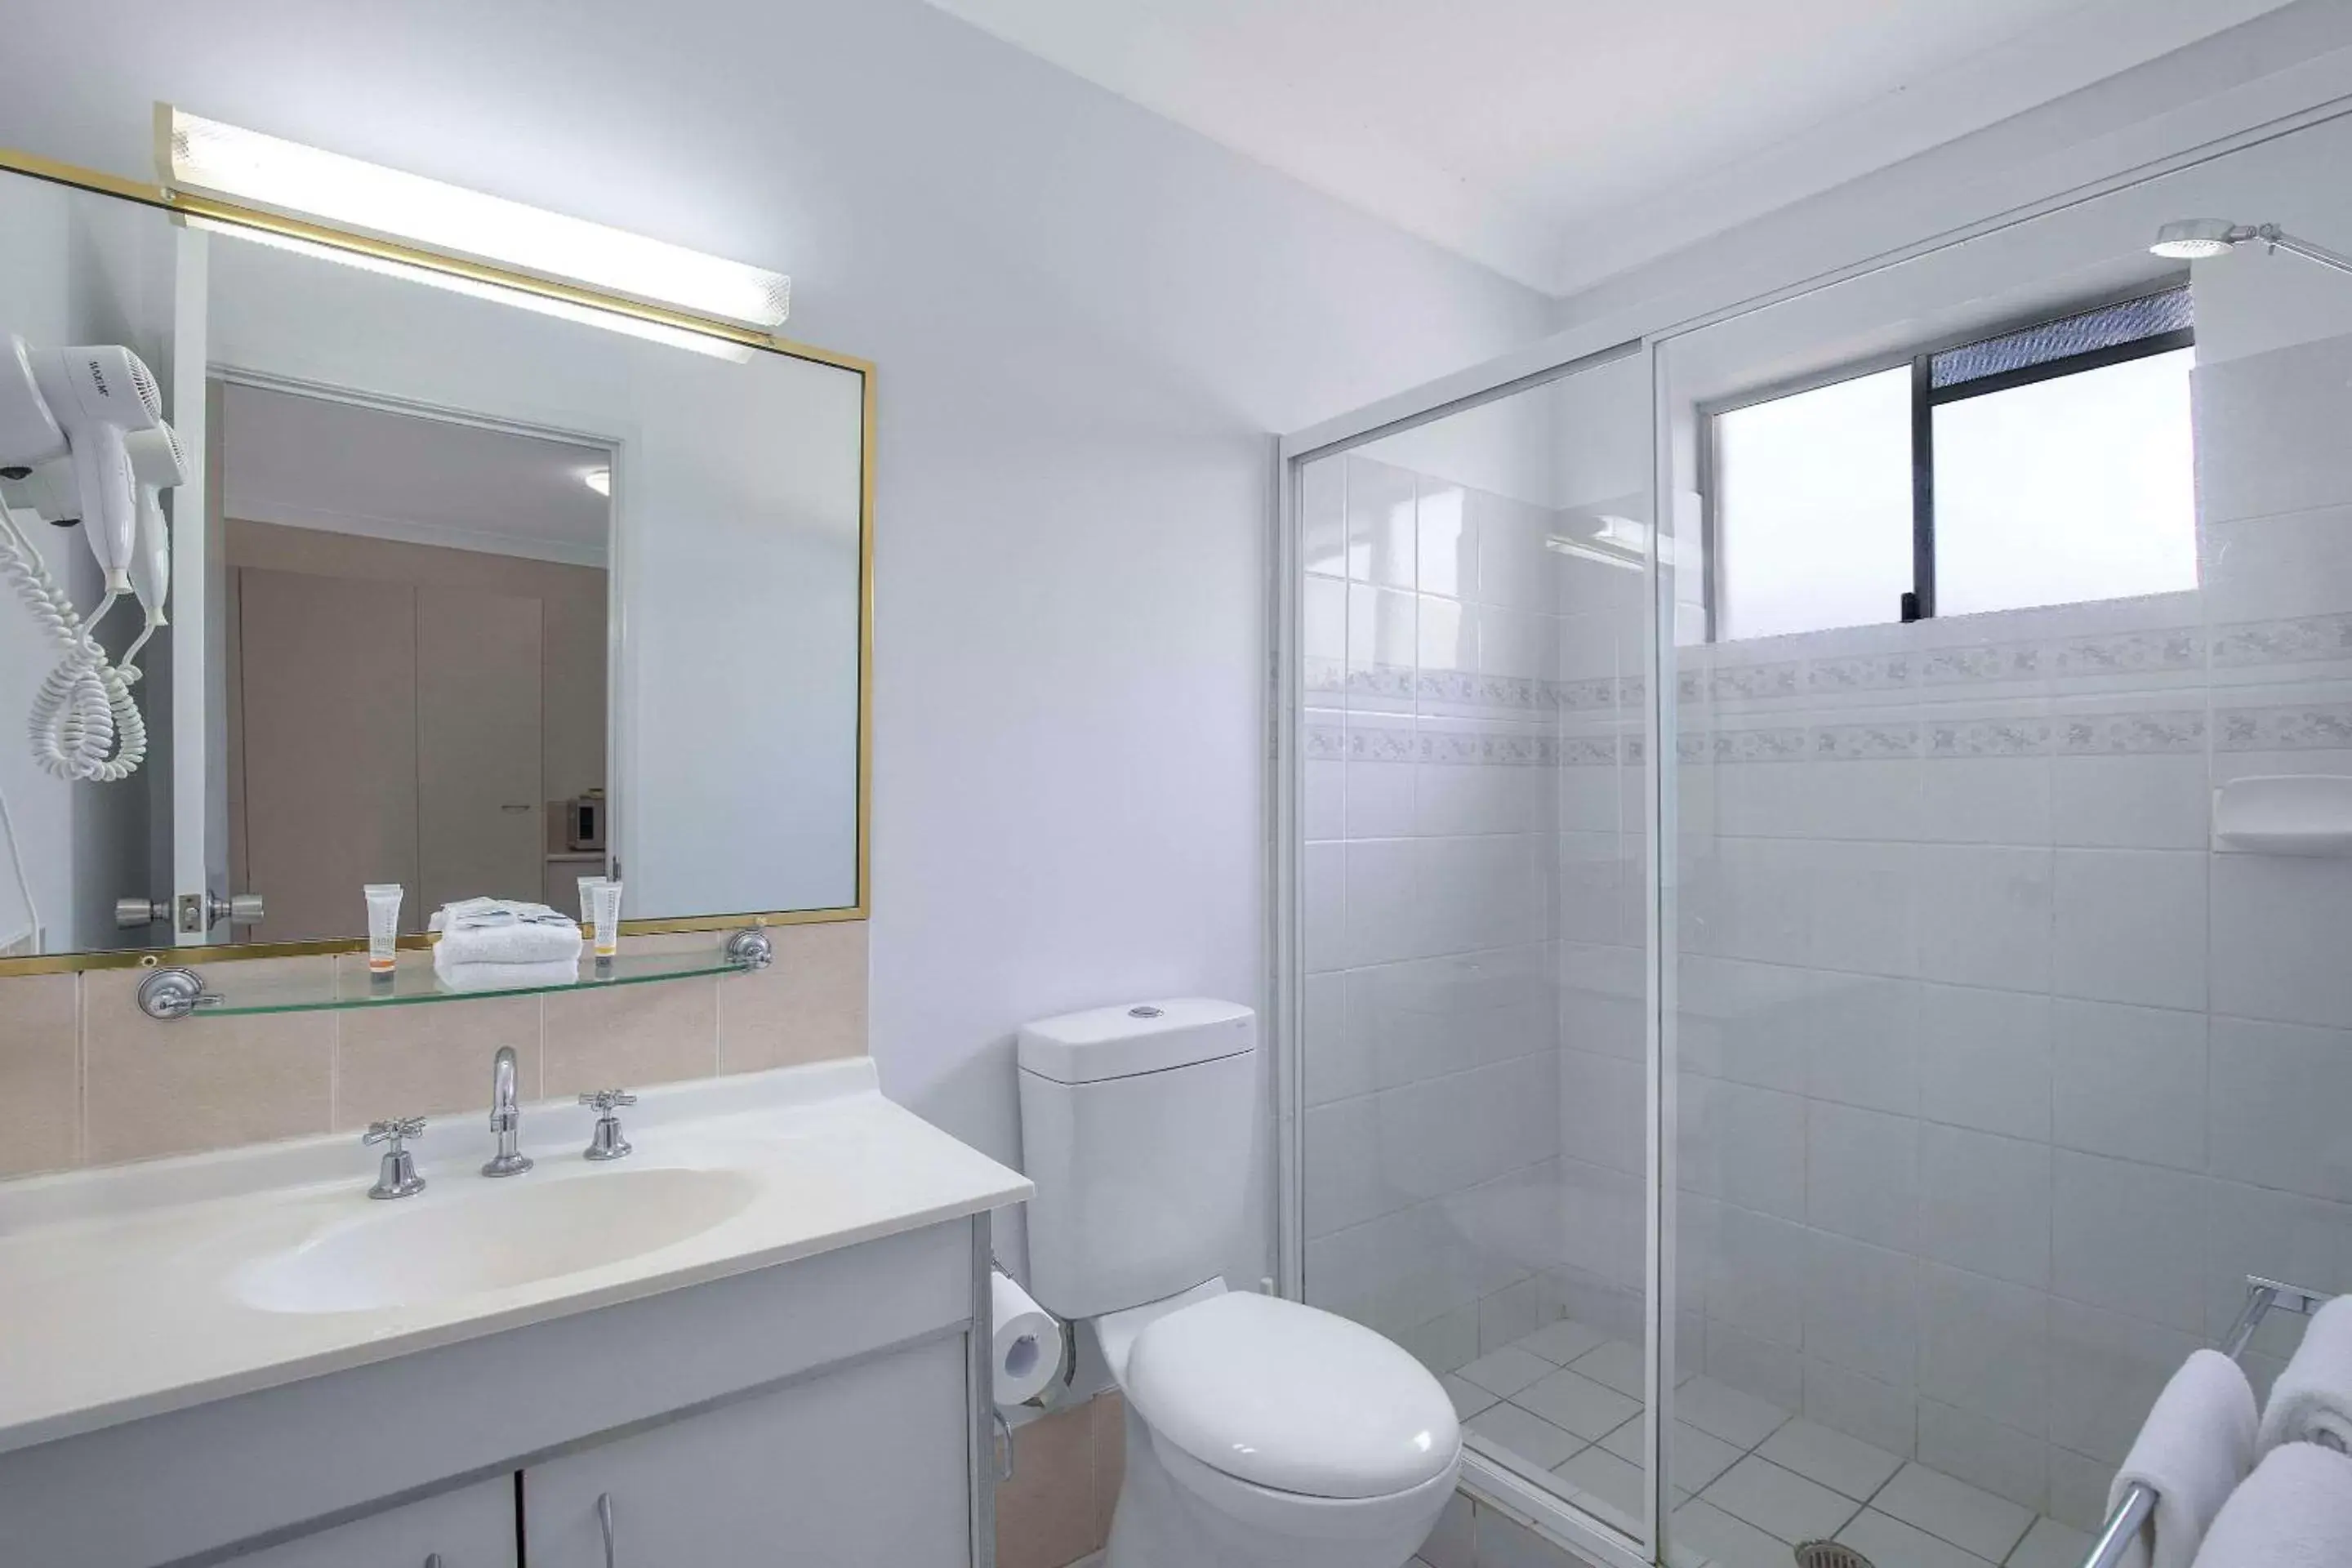 Bedroom, Bathroom in Comfort Inn North Brisbane